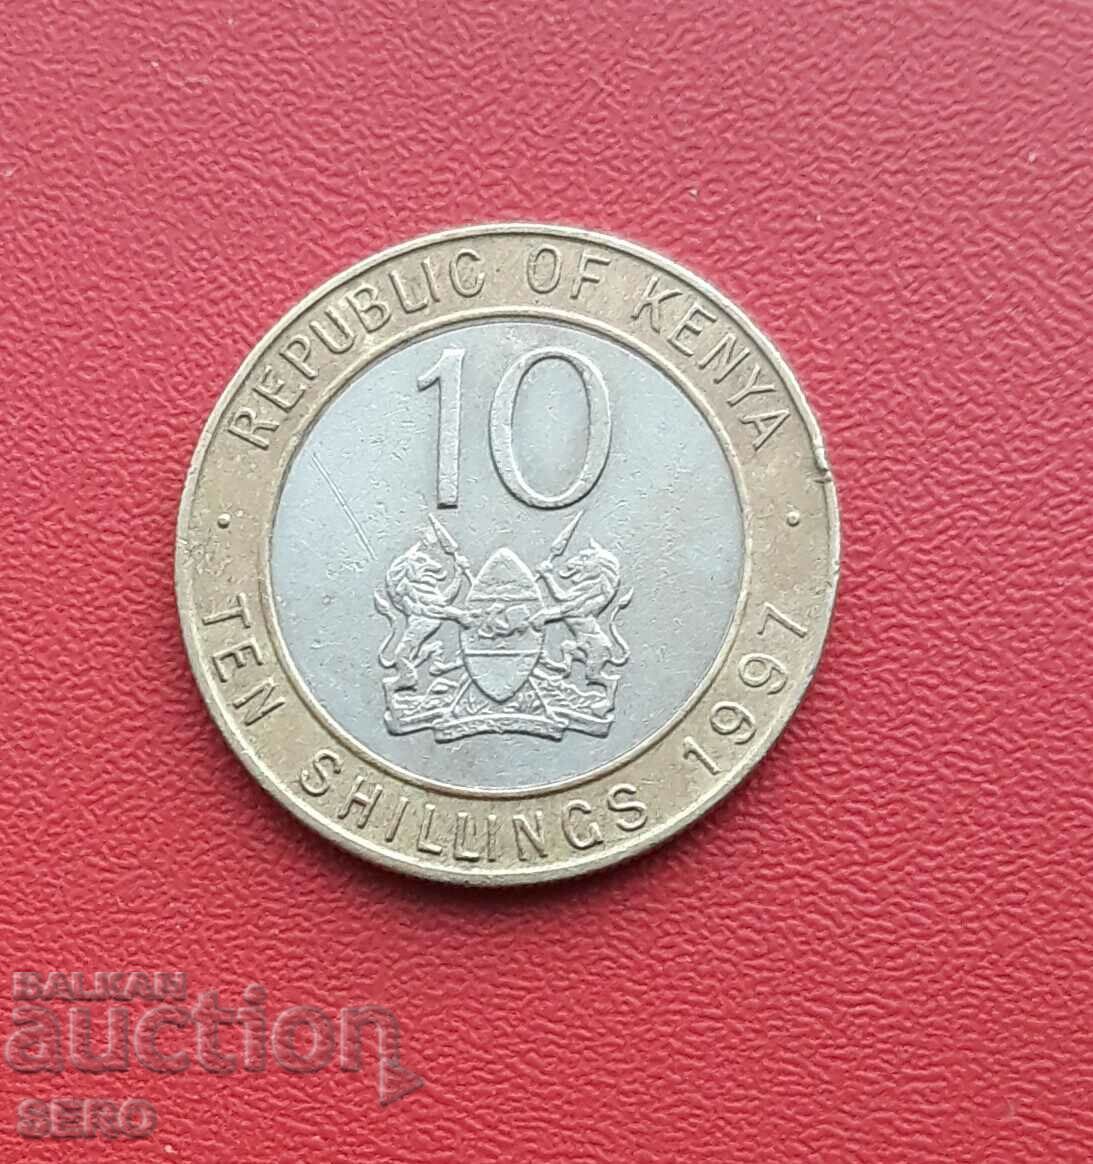 Kenya-10 shillings 1997